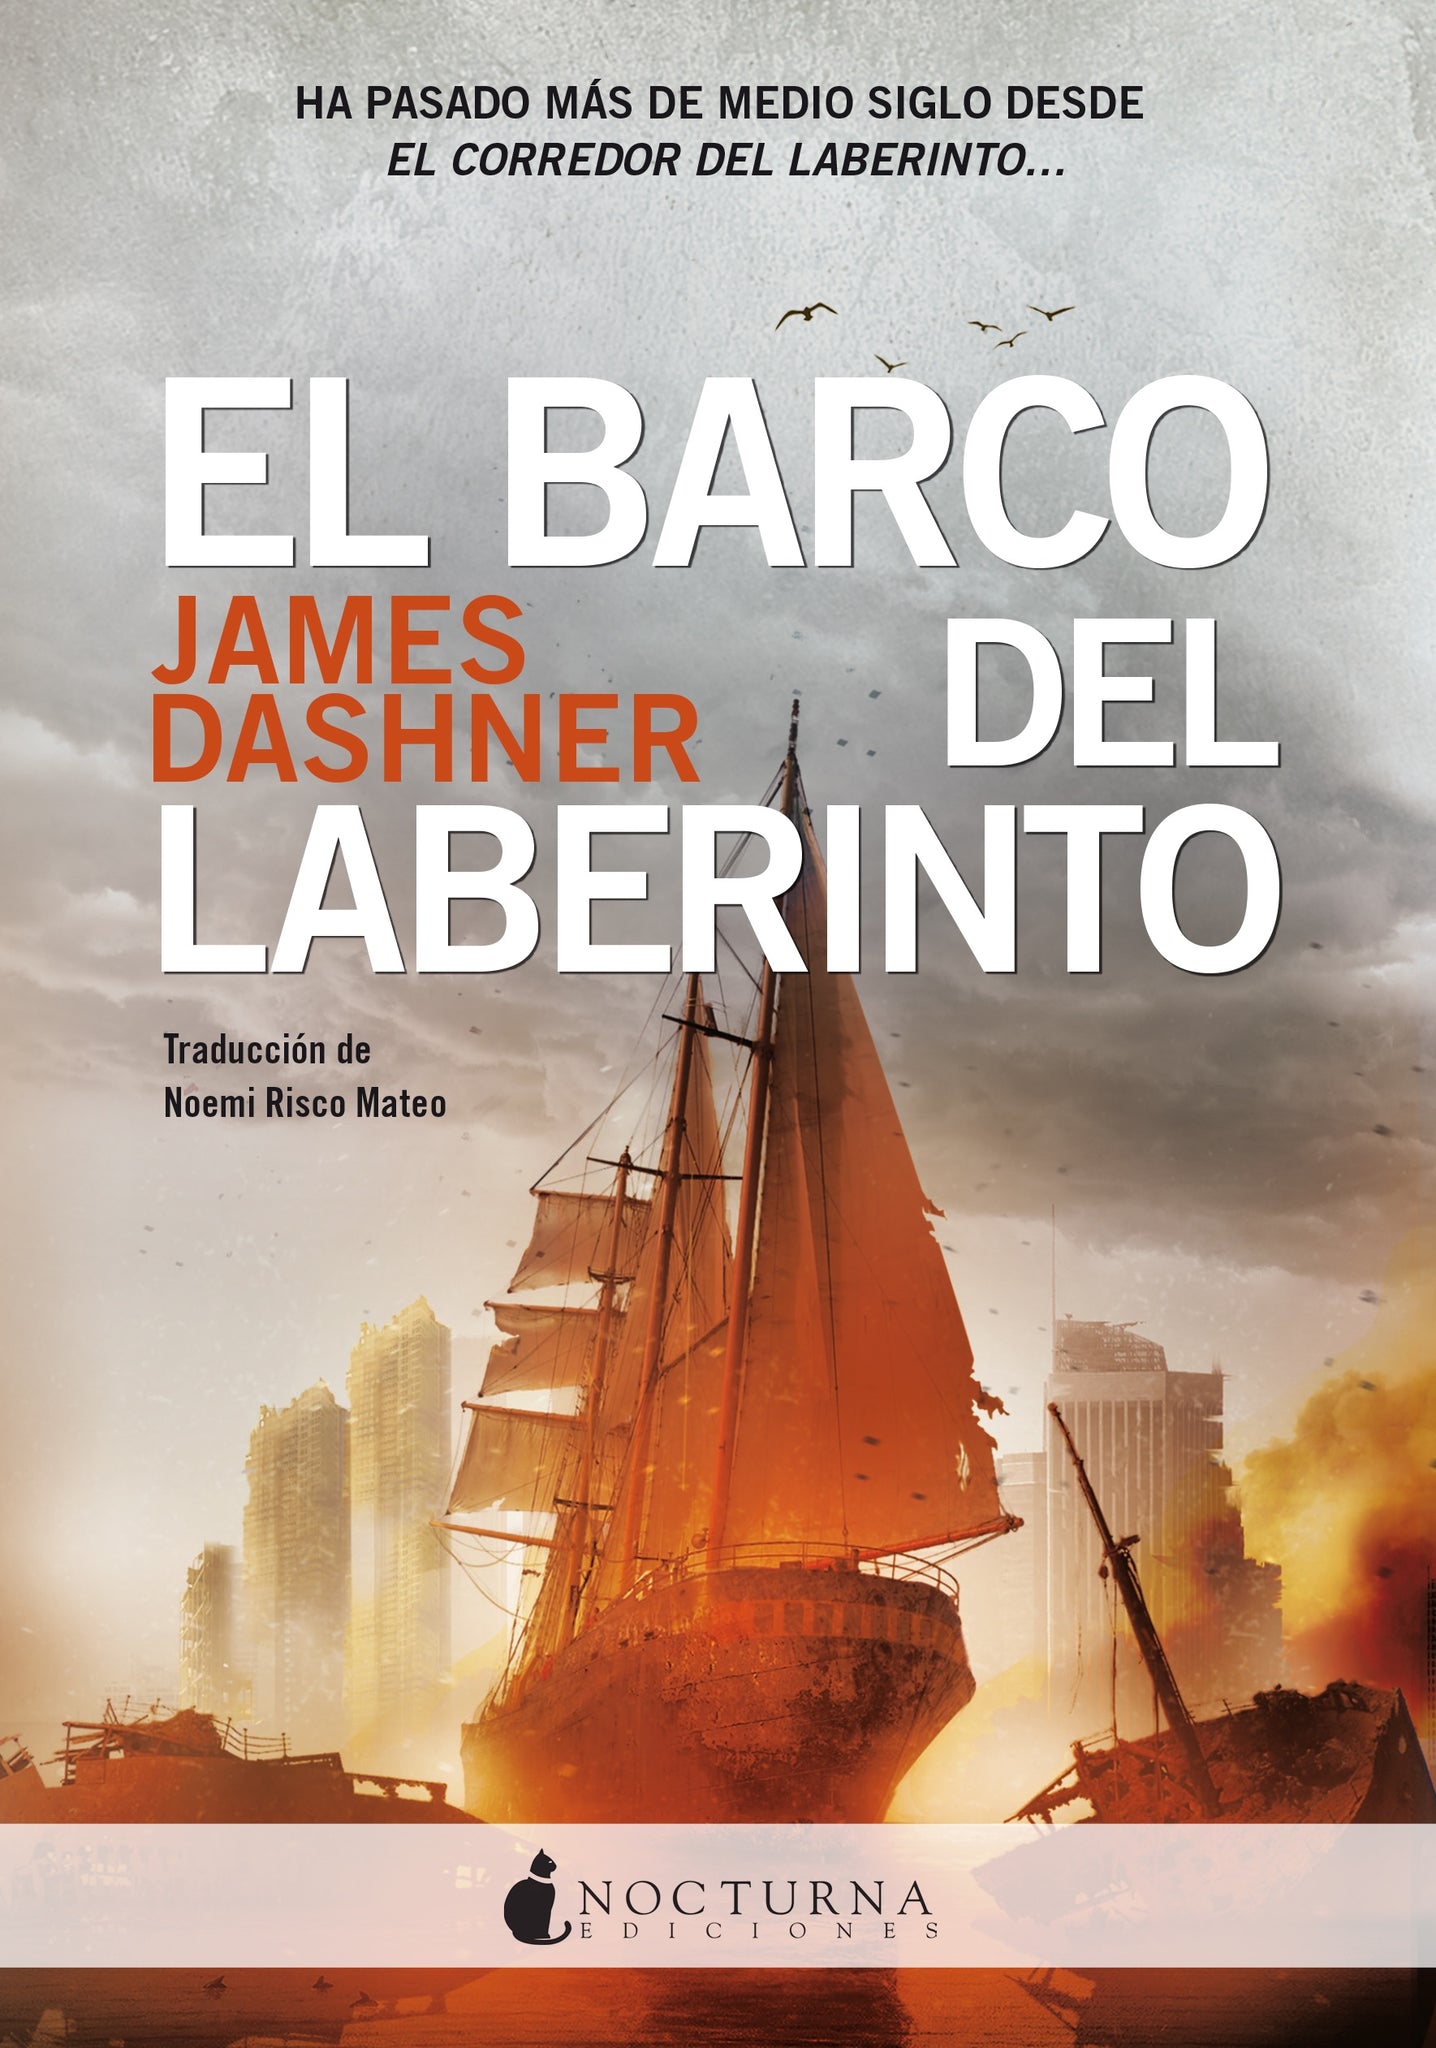 El barco del laberinto (James Dashner)